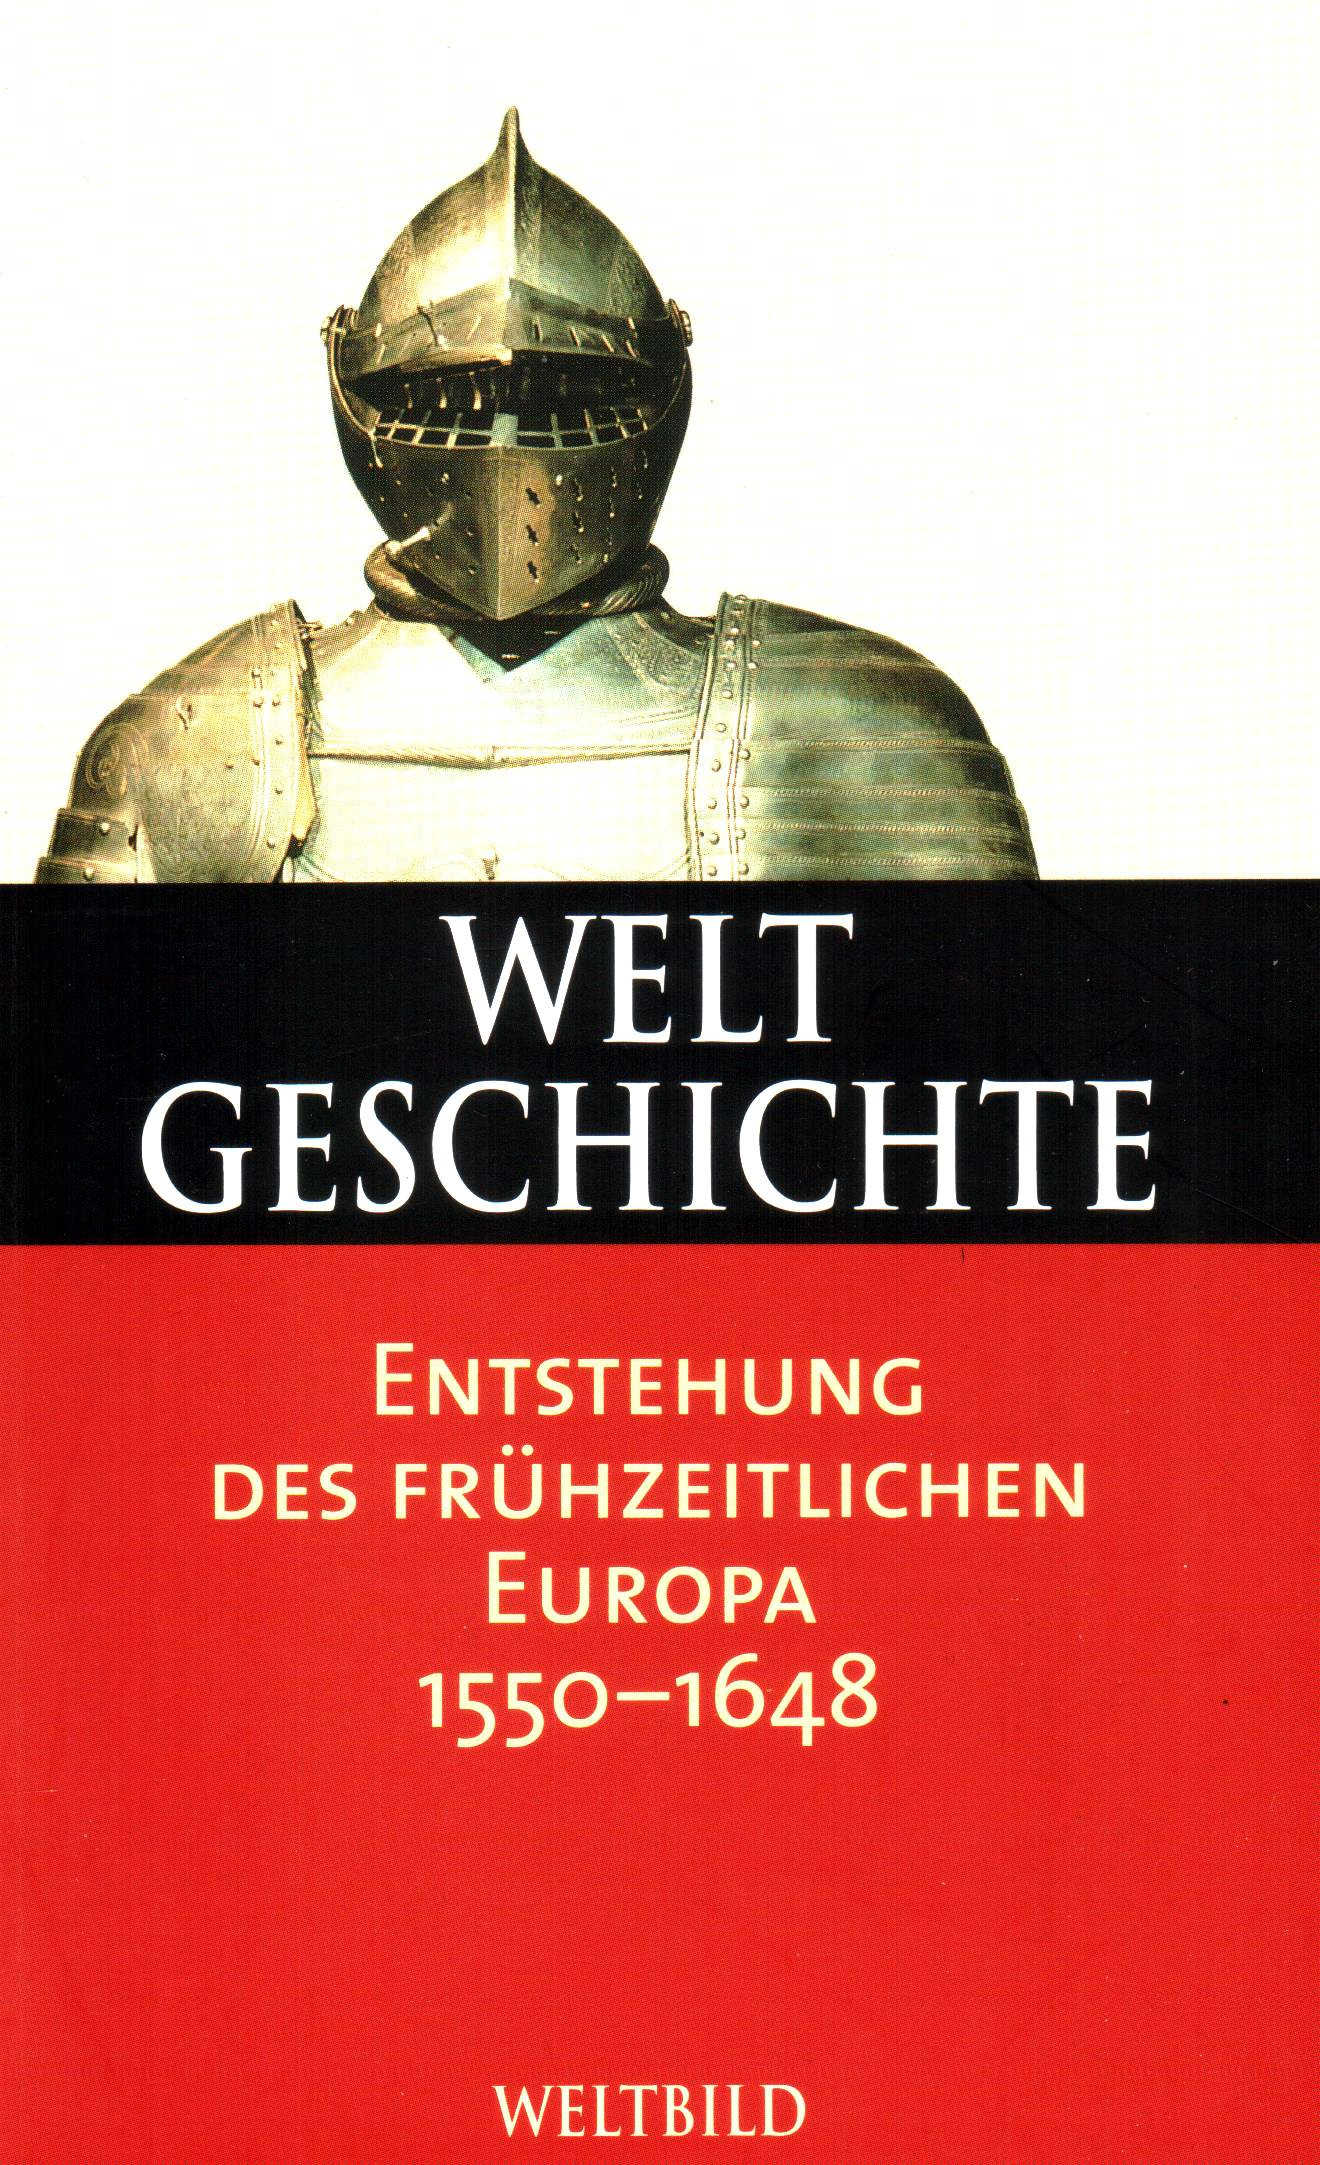 Weltgeschichte (24) Entstehung des frühzeitlichen Europa 1550-1648